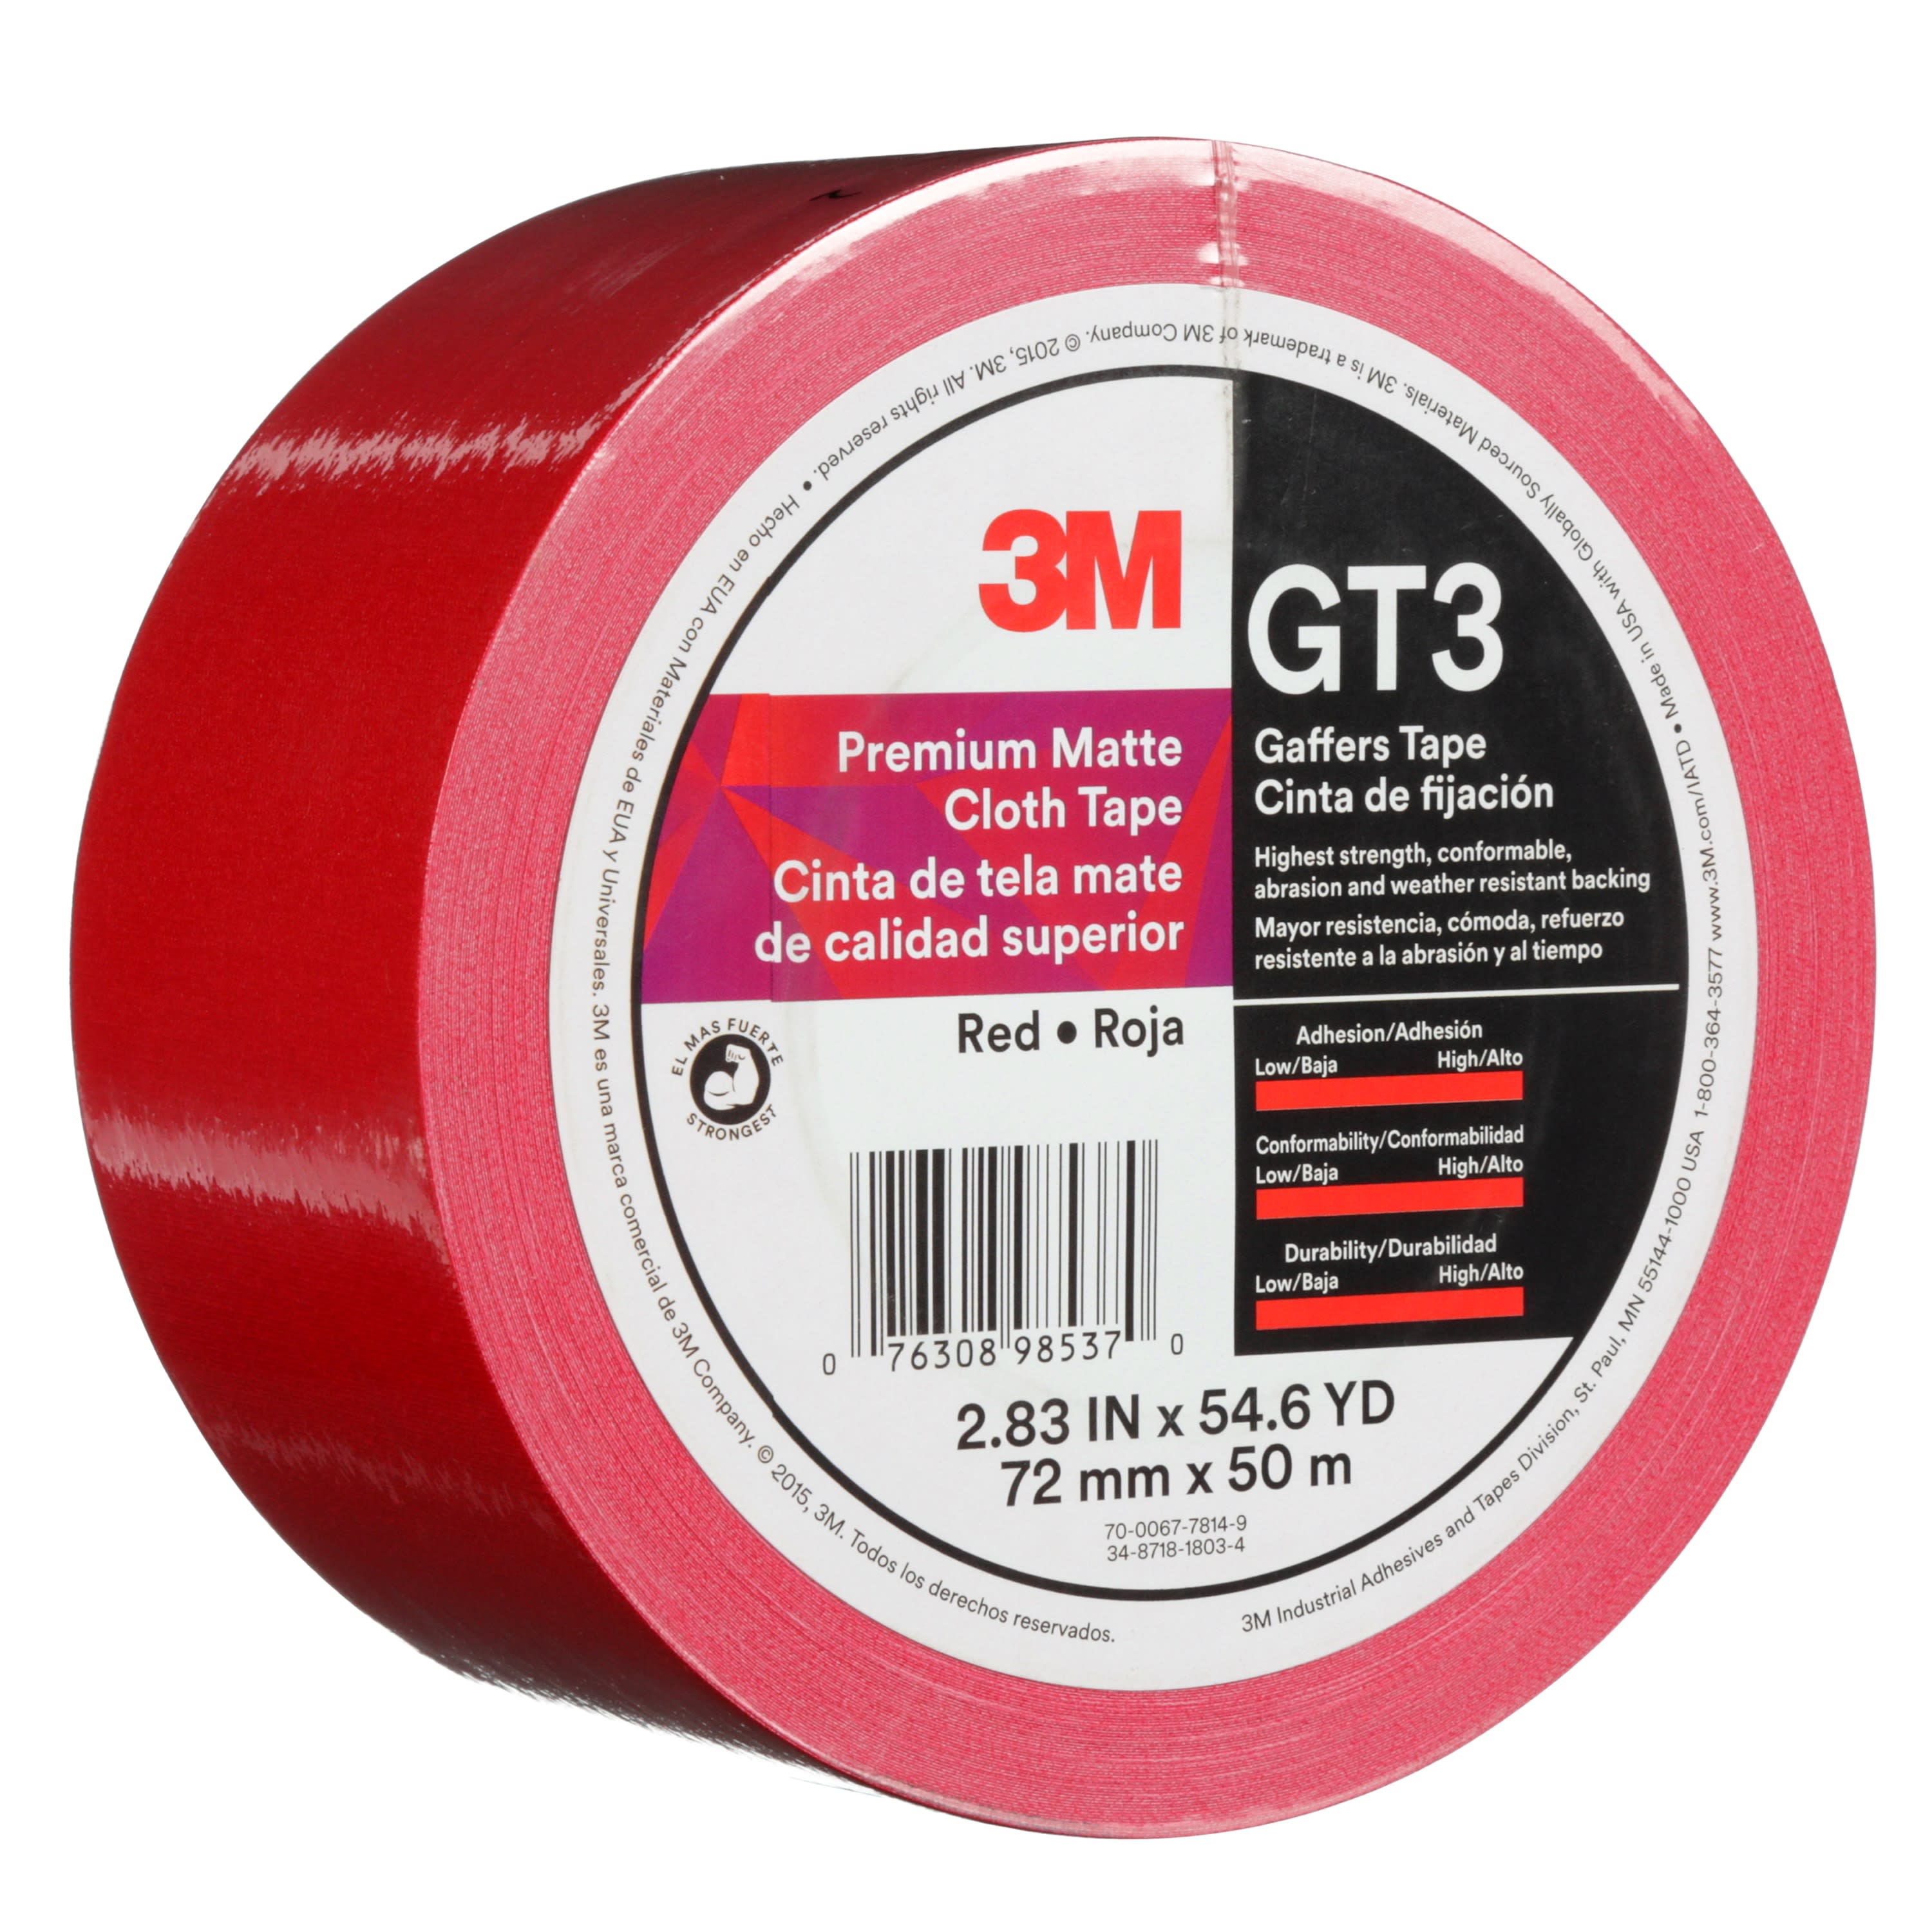 3M™ Premium Matte Cloth (Gaffers) Tape GT3, Red, 72 mm x 50 m, 11 mil,
16 per case